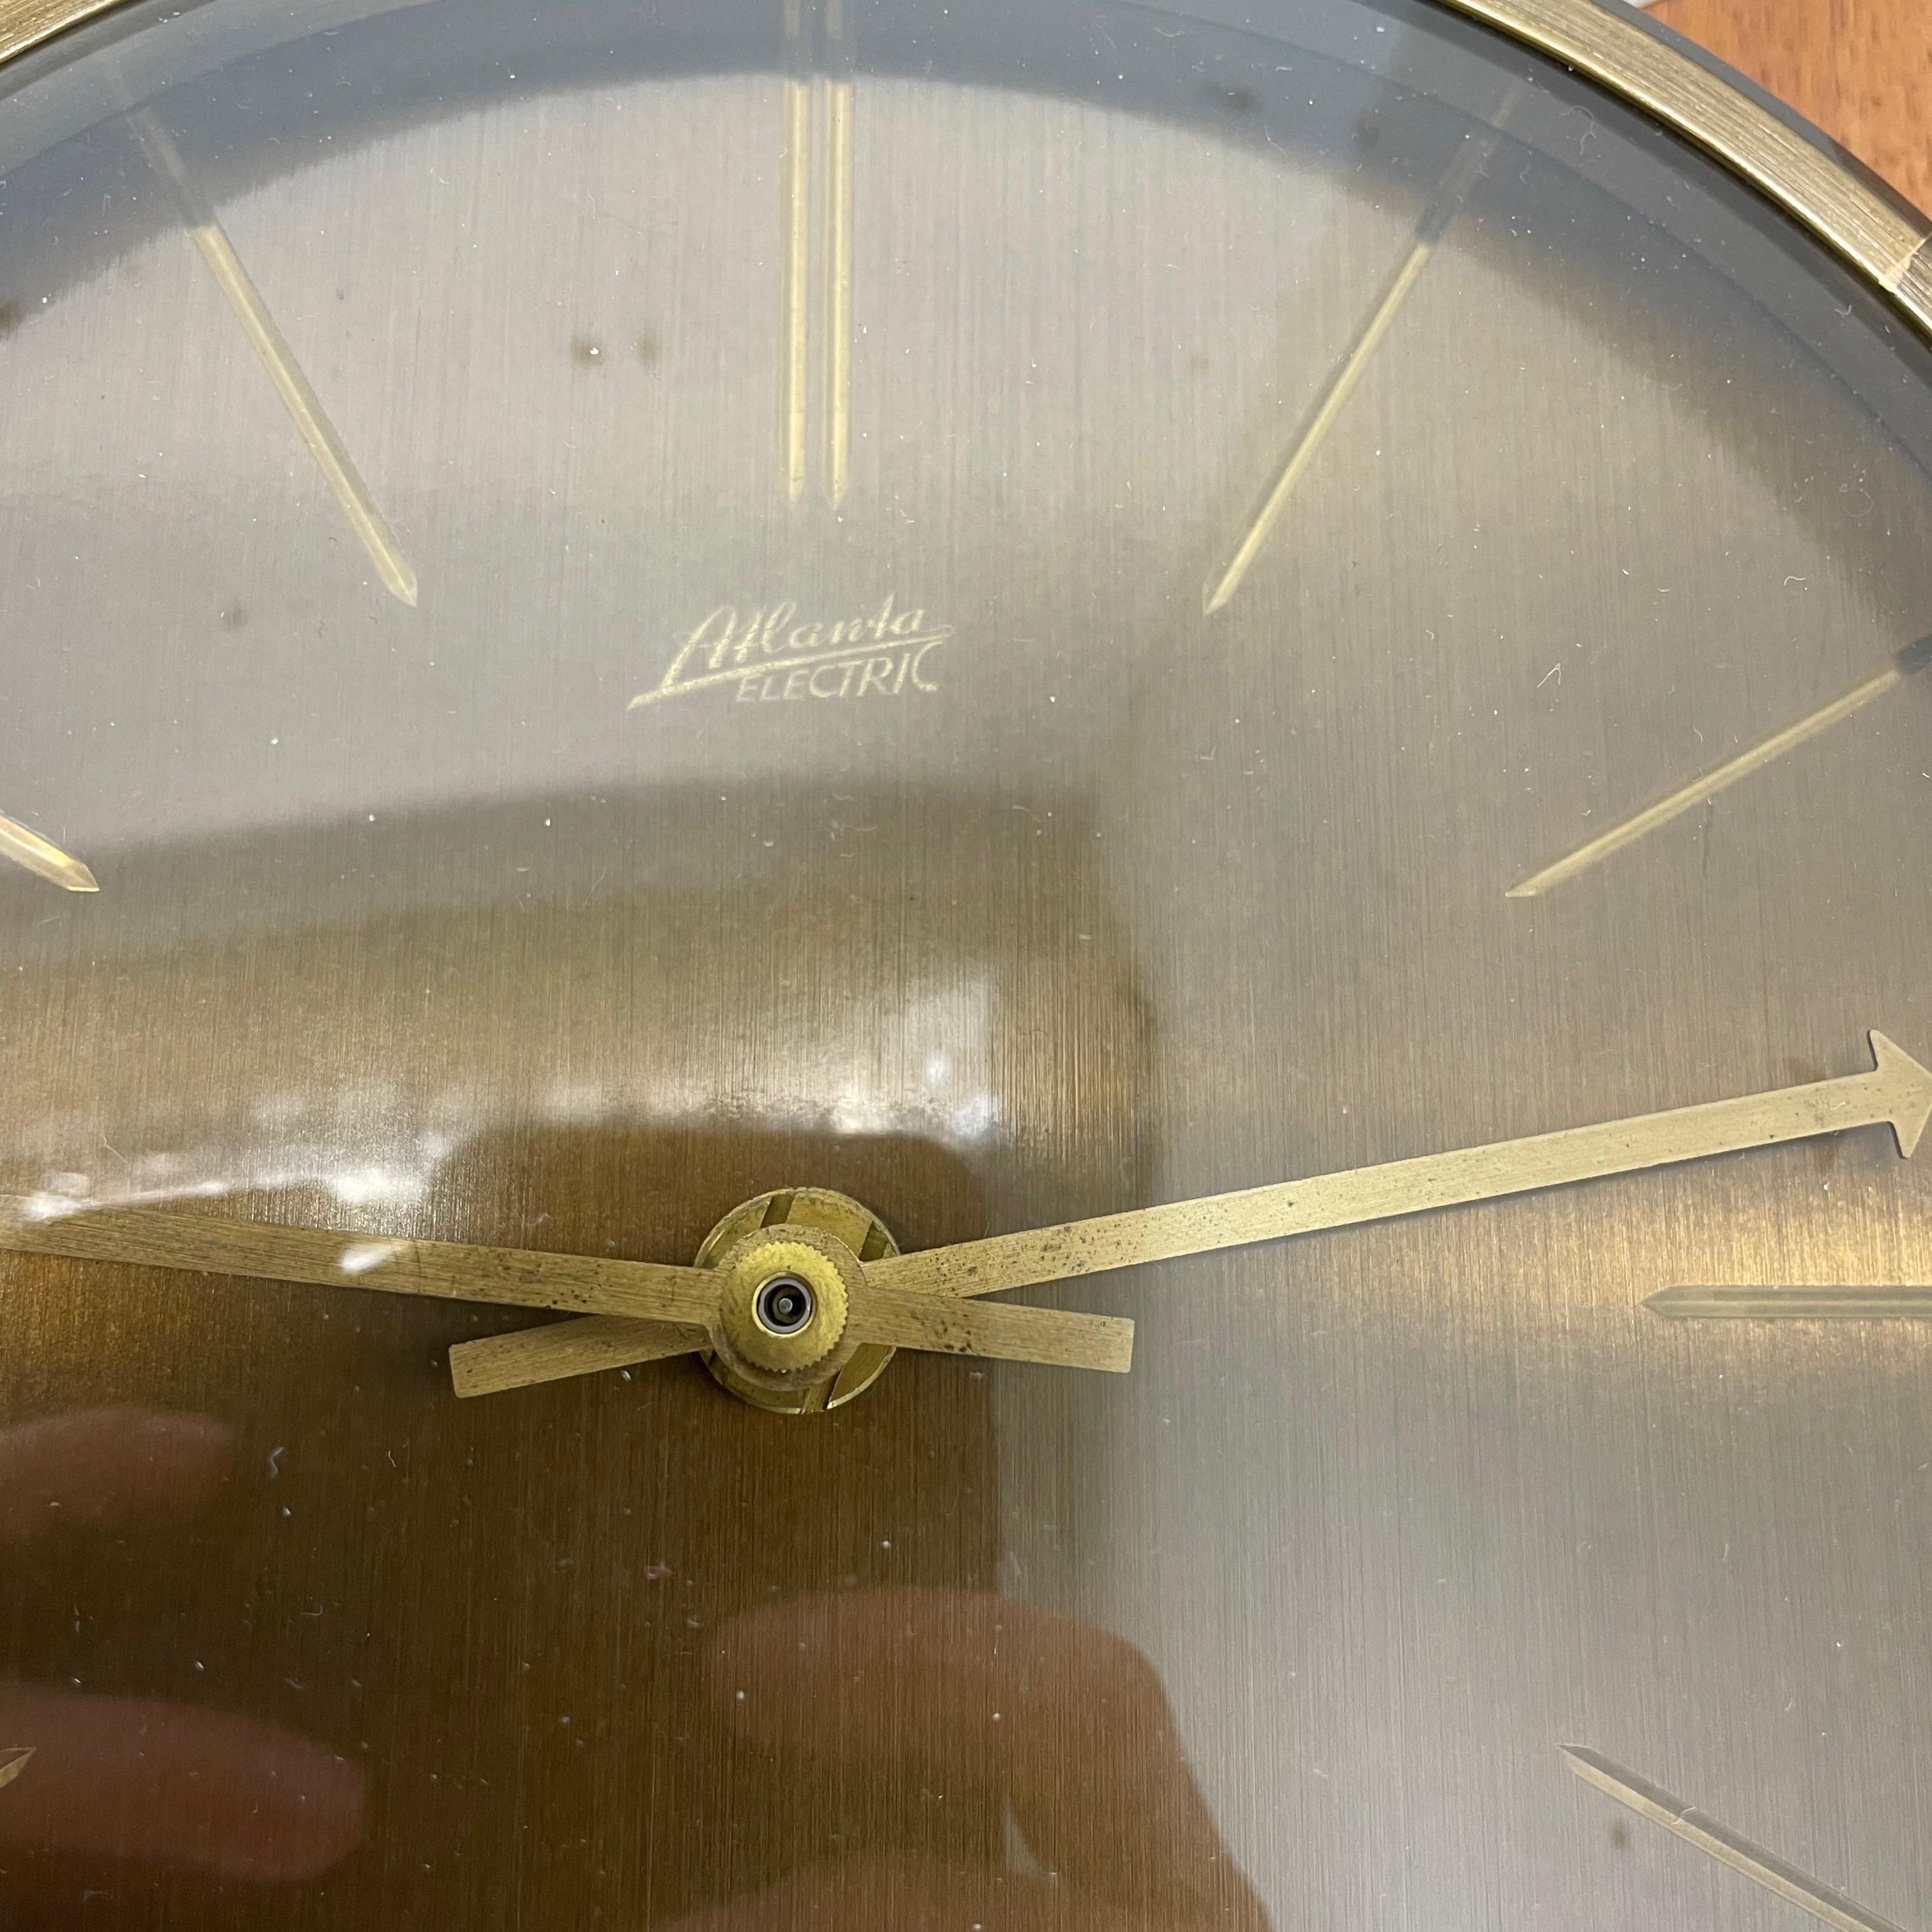 Metal Vintage Hollywood Regency Teak + Brass Wall Clock Atlanta Electric Germany 1960s For Sale